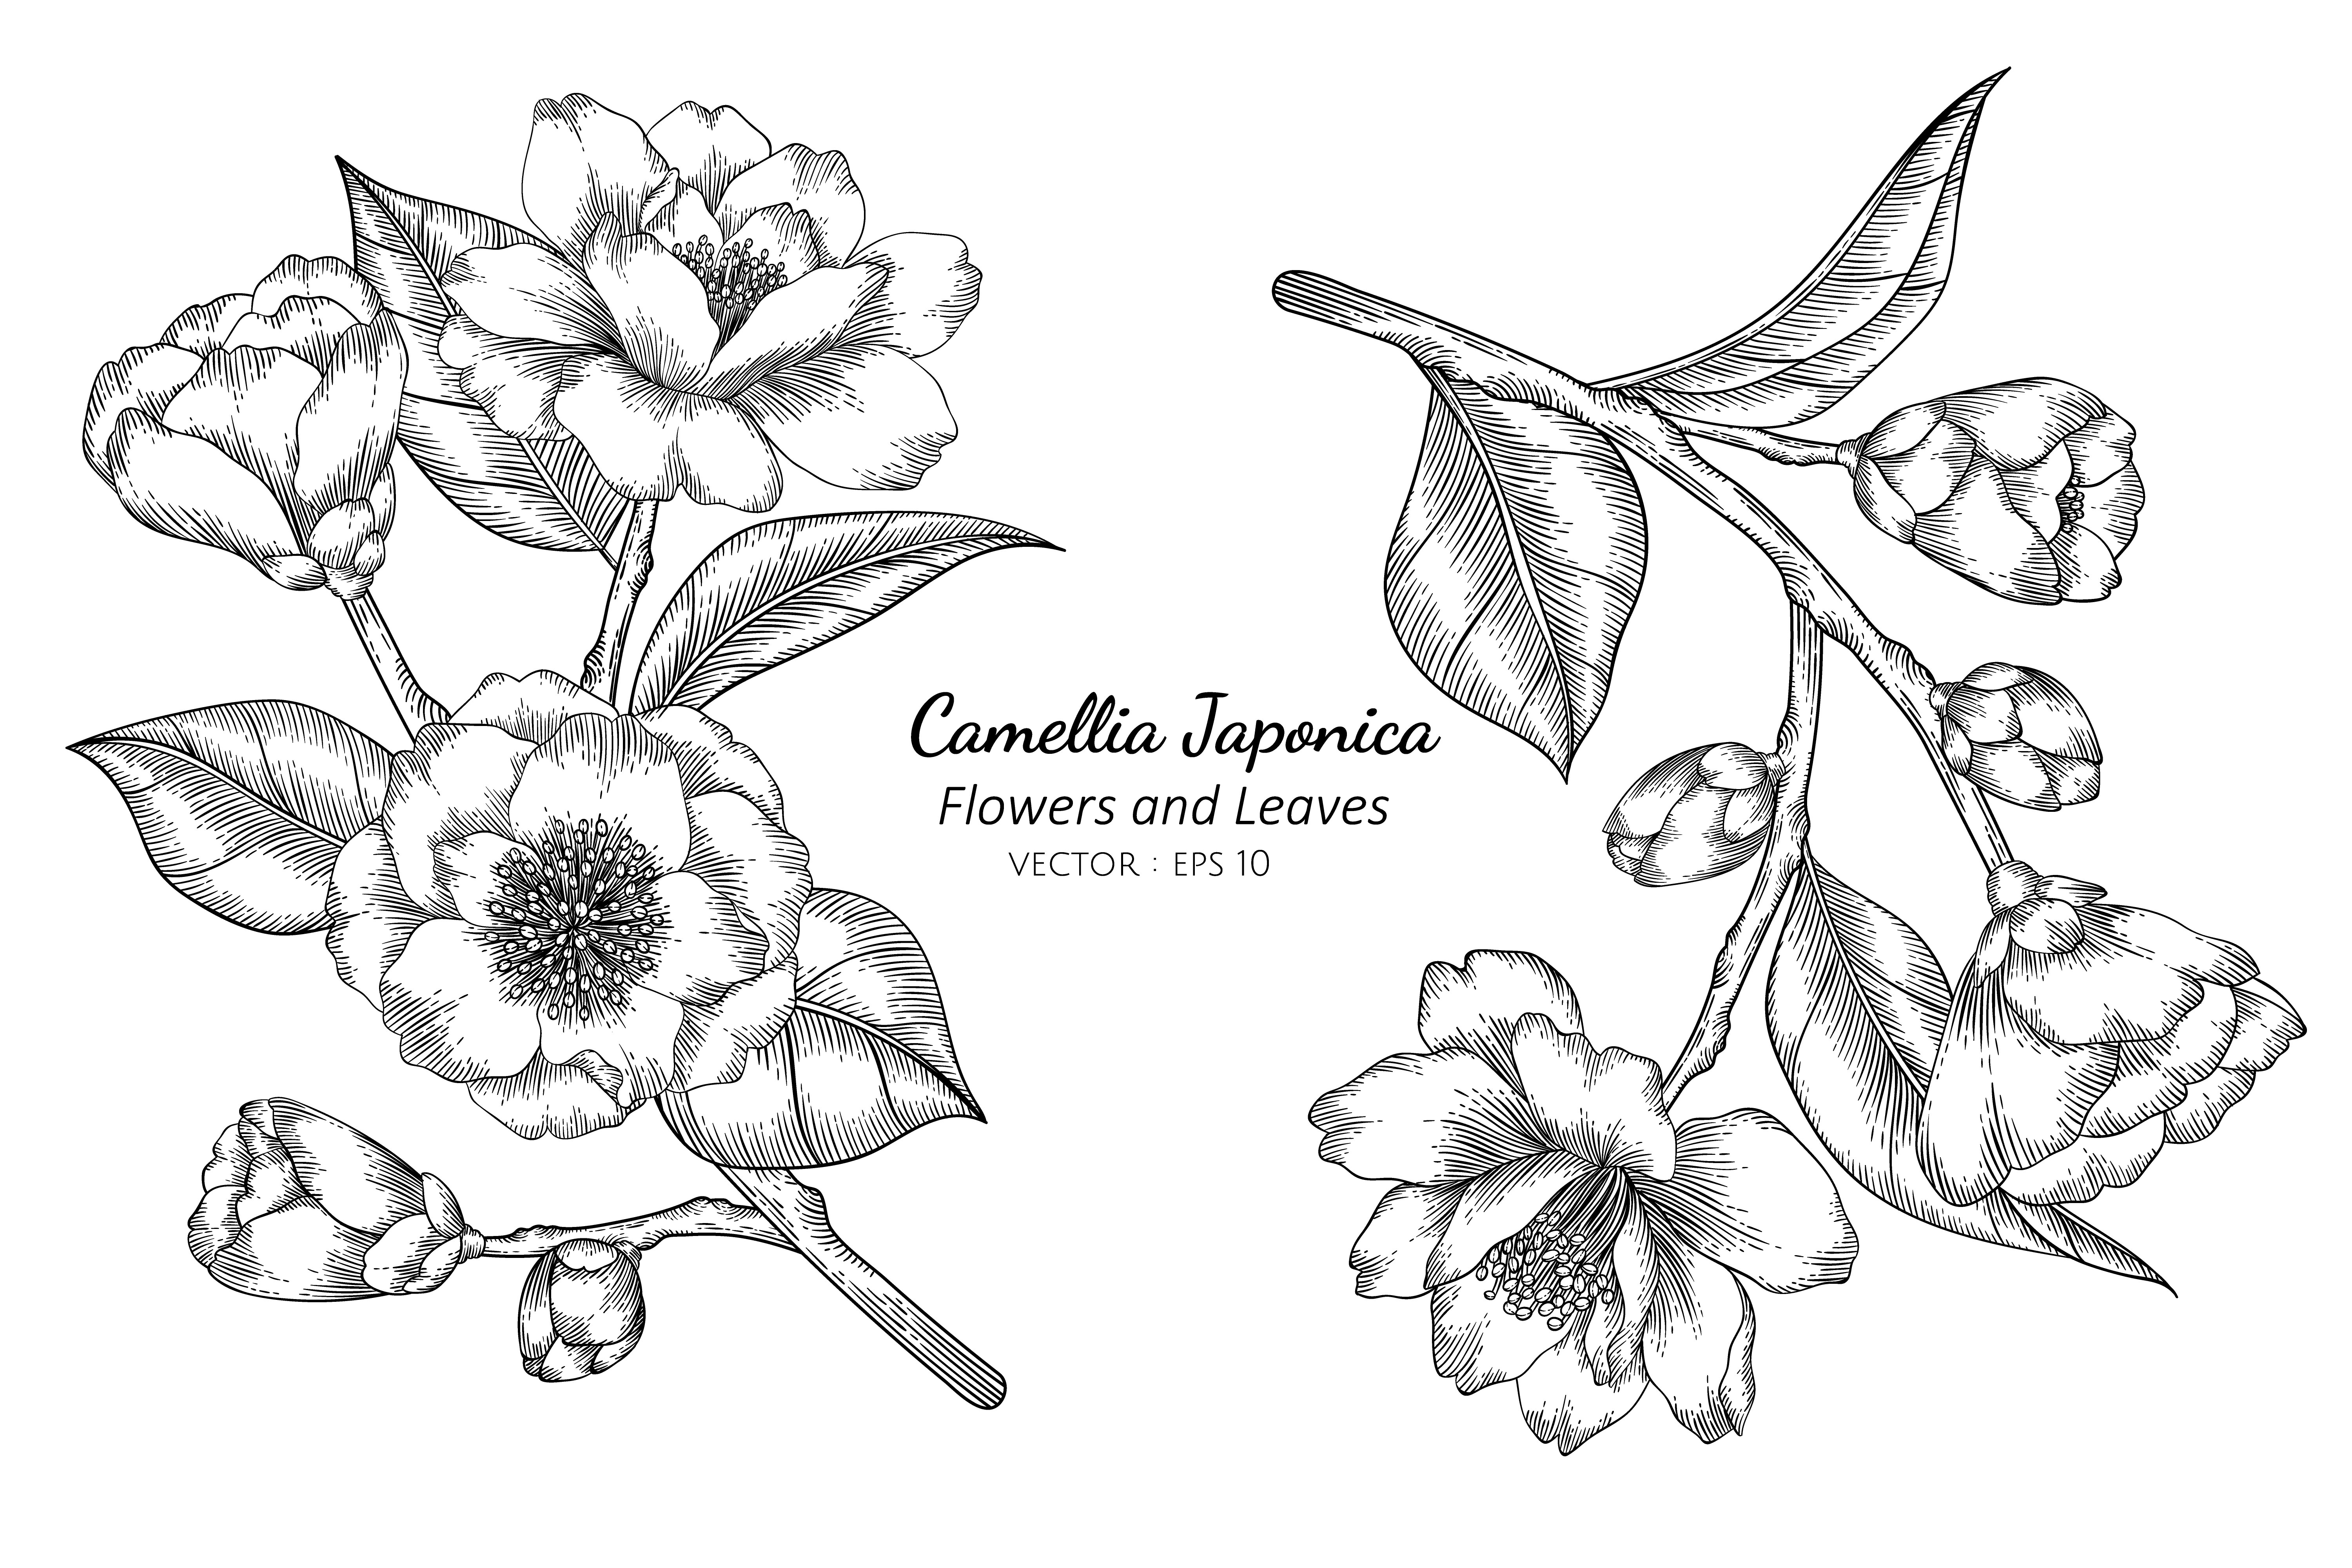 fleurs de camellia japonica 999493 - Telecharger Vectoriel Gratuit, Clipart  Graphique, Vecteur Dessins et Pictogramme Gratuit